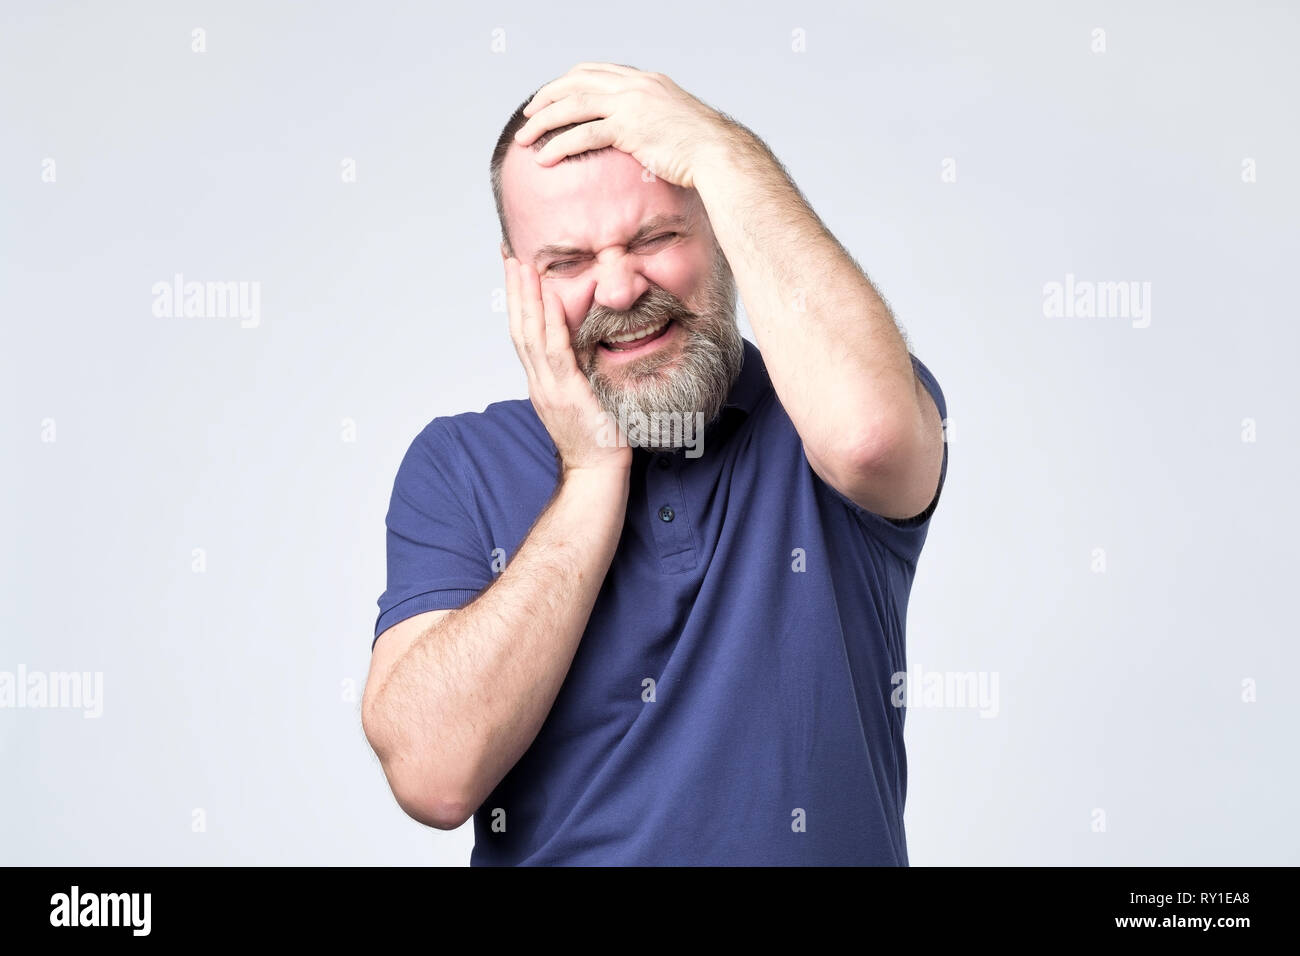 El hombre europeo maduro con barba está llorando en pánico. Foto de stock